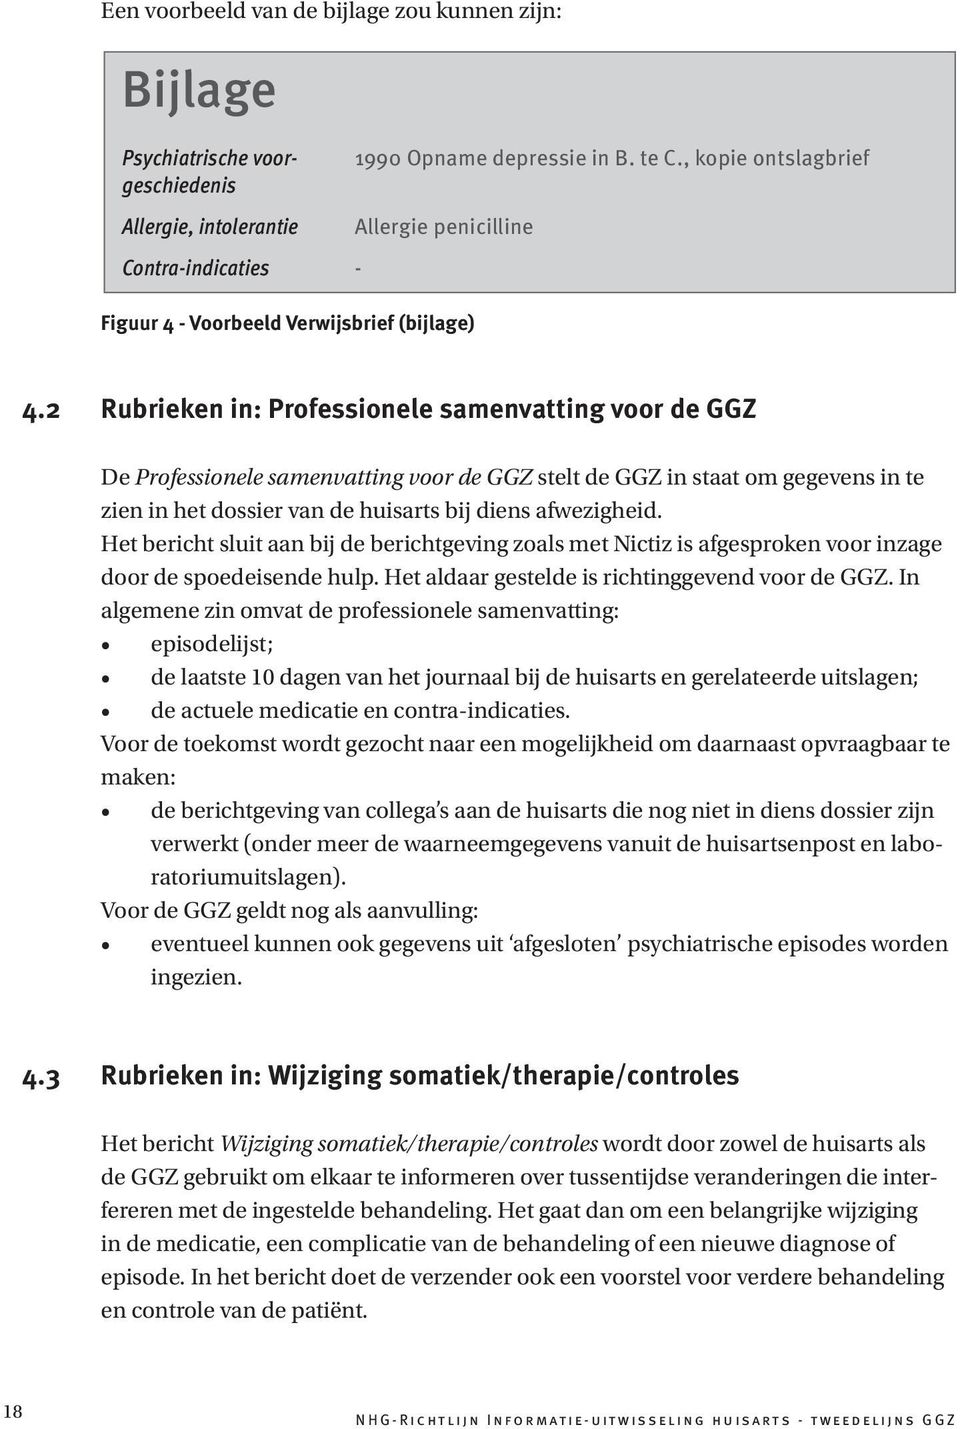 2 Rubrieken in: Professionele samenvatting voor de GGZ De Professionele samenvatting voor de GGZ stelt de GGZ in staat om gegevens in te zien in het dossier van de huisarts bij diens afwezigheid.